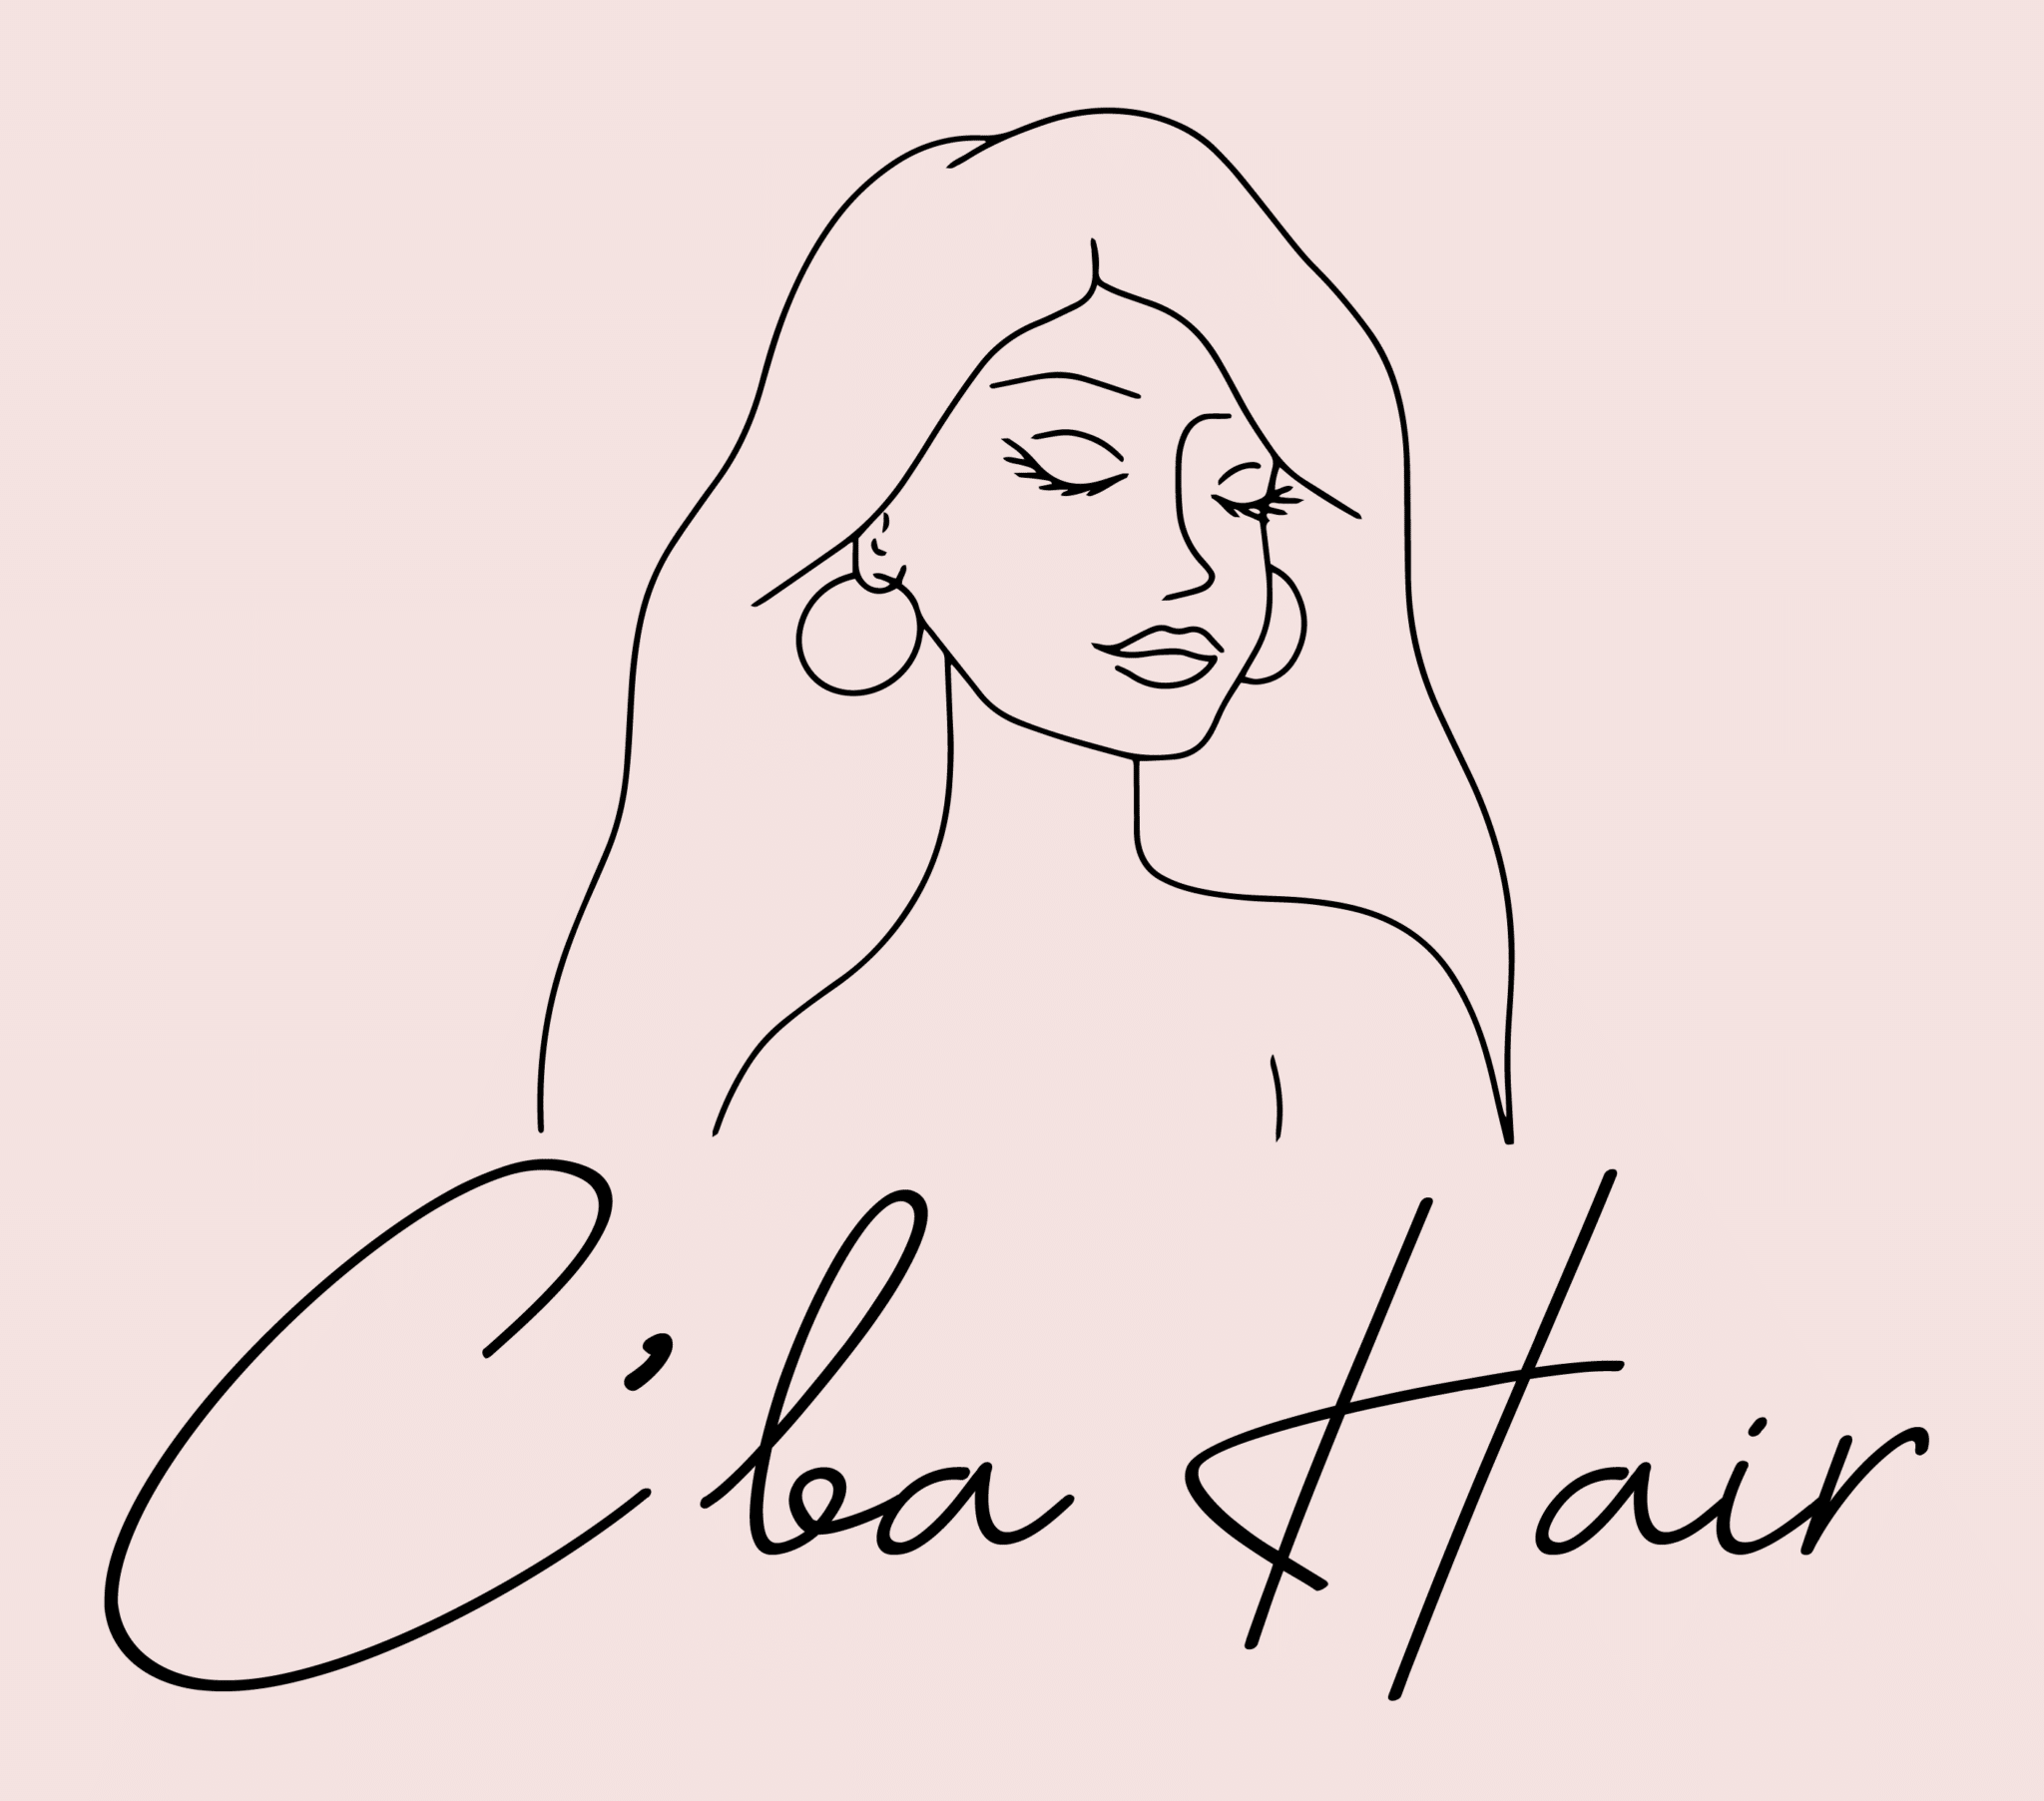 C'ba Hair